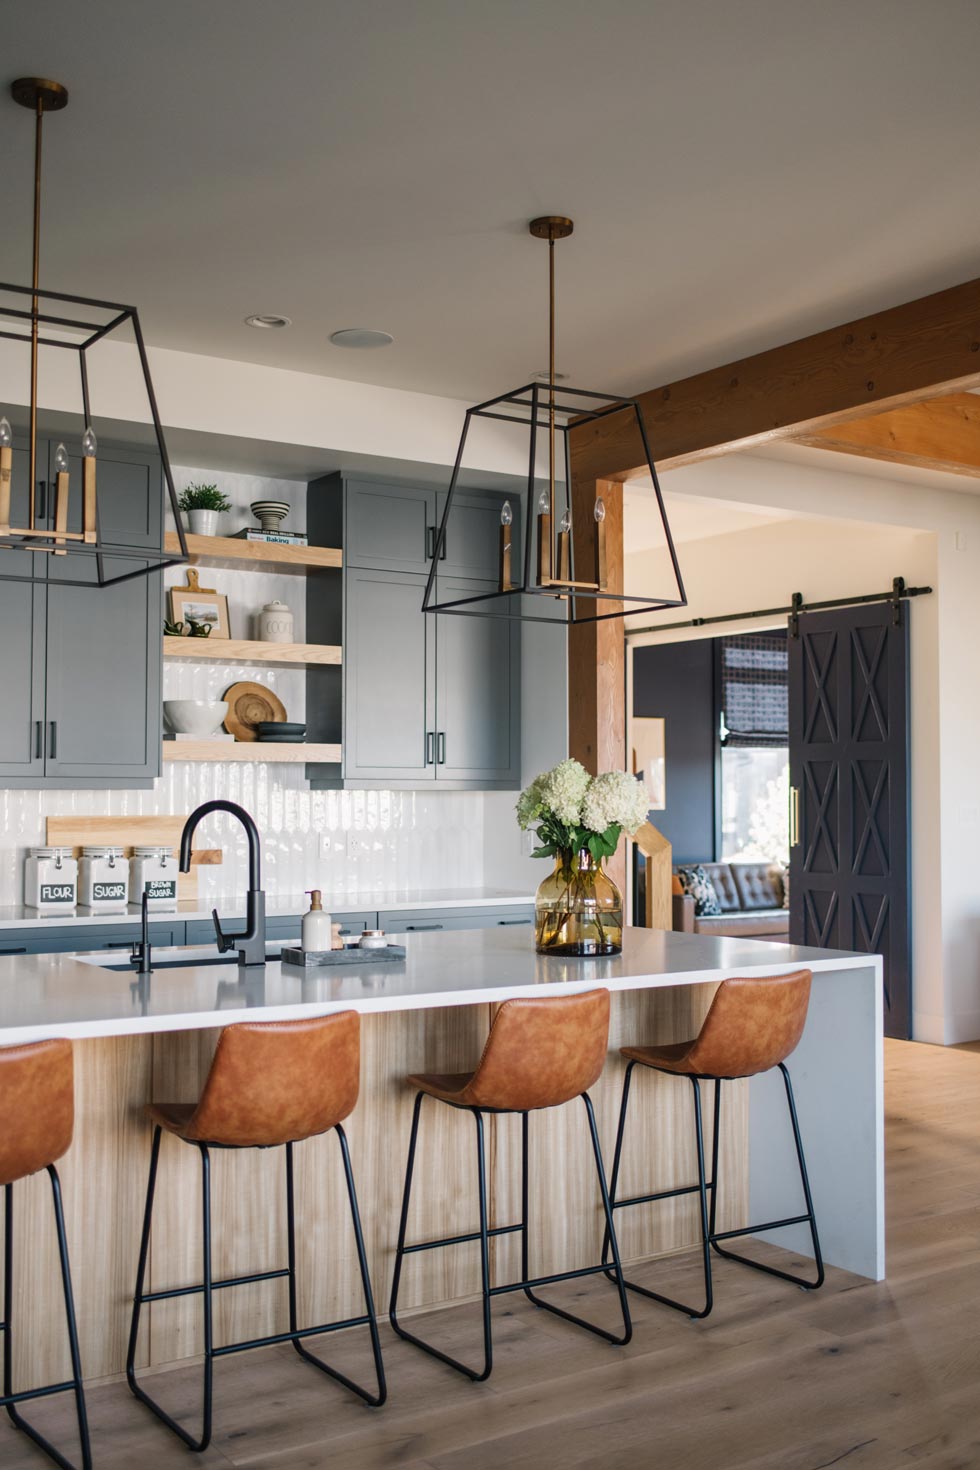 Warm Modern Kitchen with Grey Cabinets Edmonton Based Designer Marissa Biggs